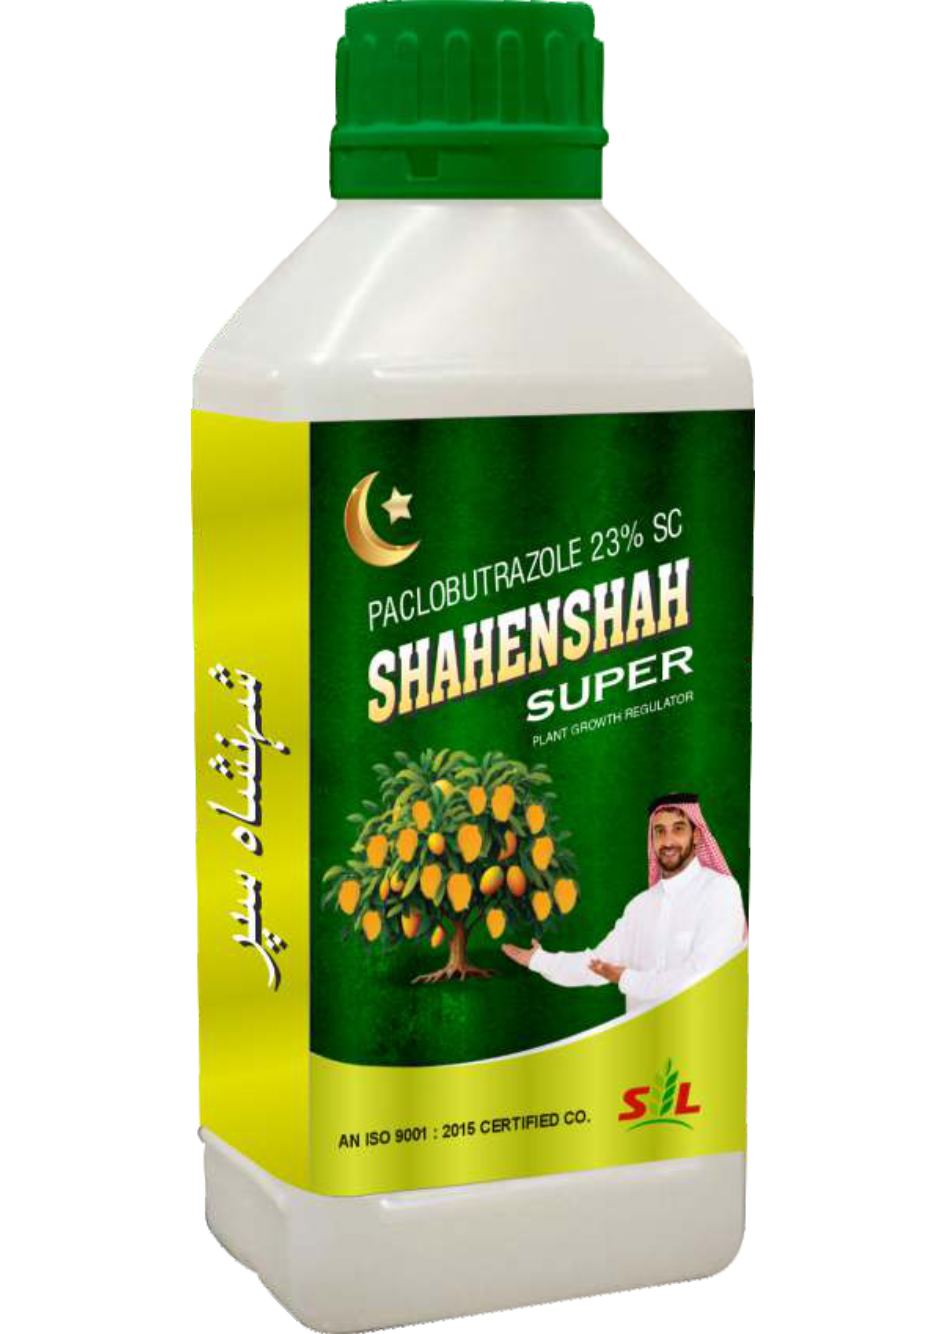 Shahenshah Super